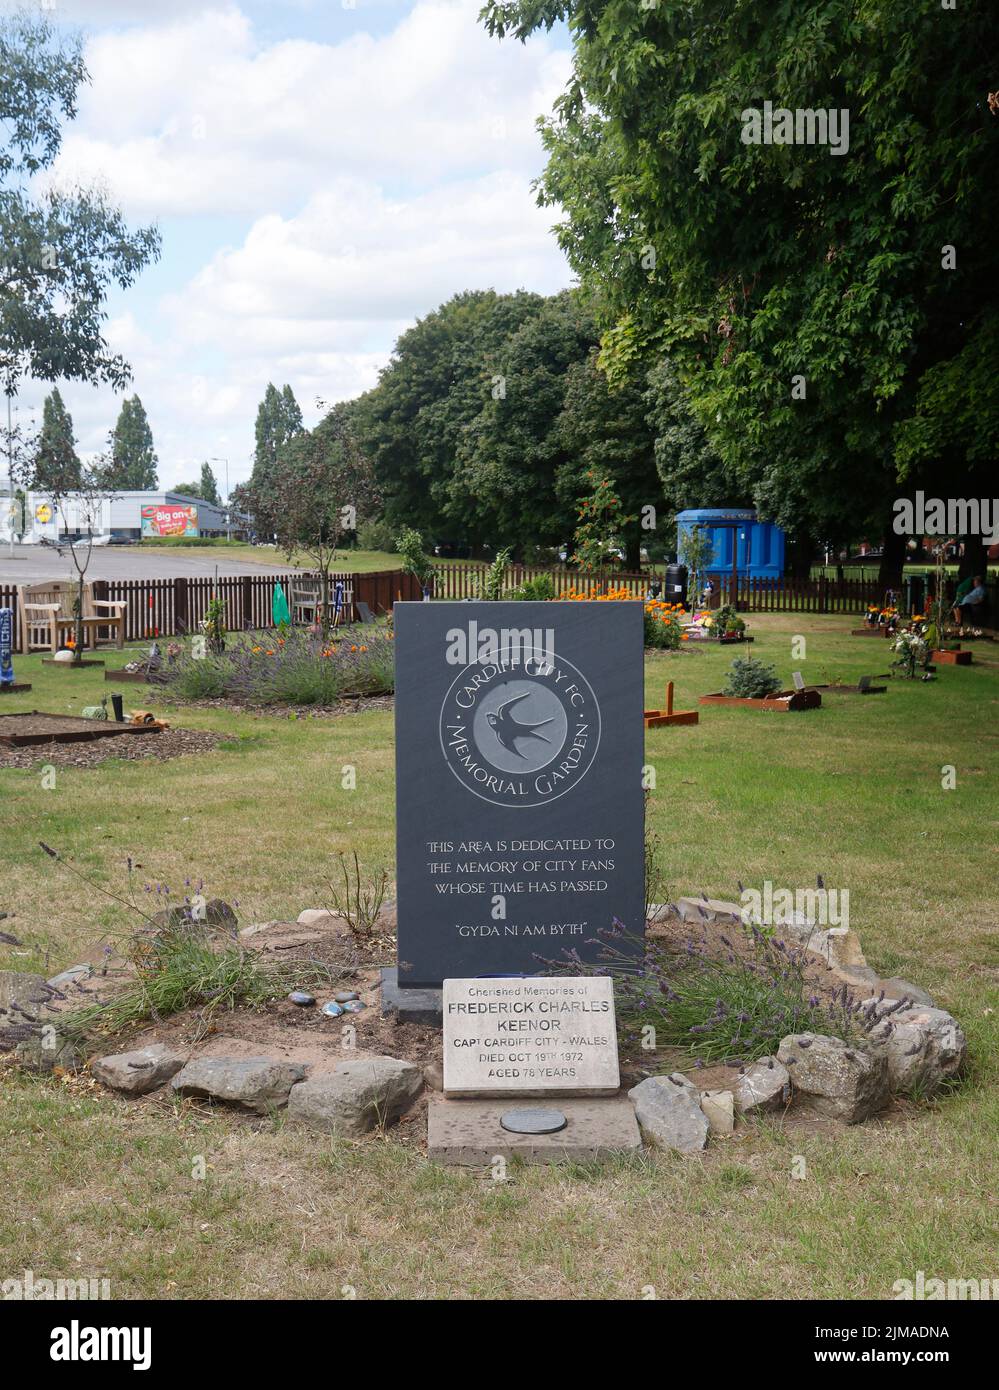 Giardini commemorativi con pietra in memoria di Frederick Charles Keenor, Cardiff City Stadium Grounds. Estate 2022. Agosto Foto Stock